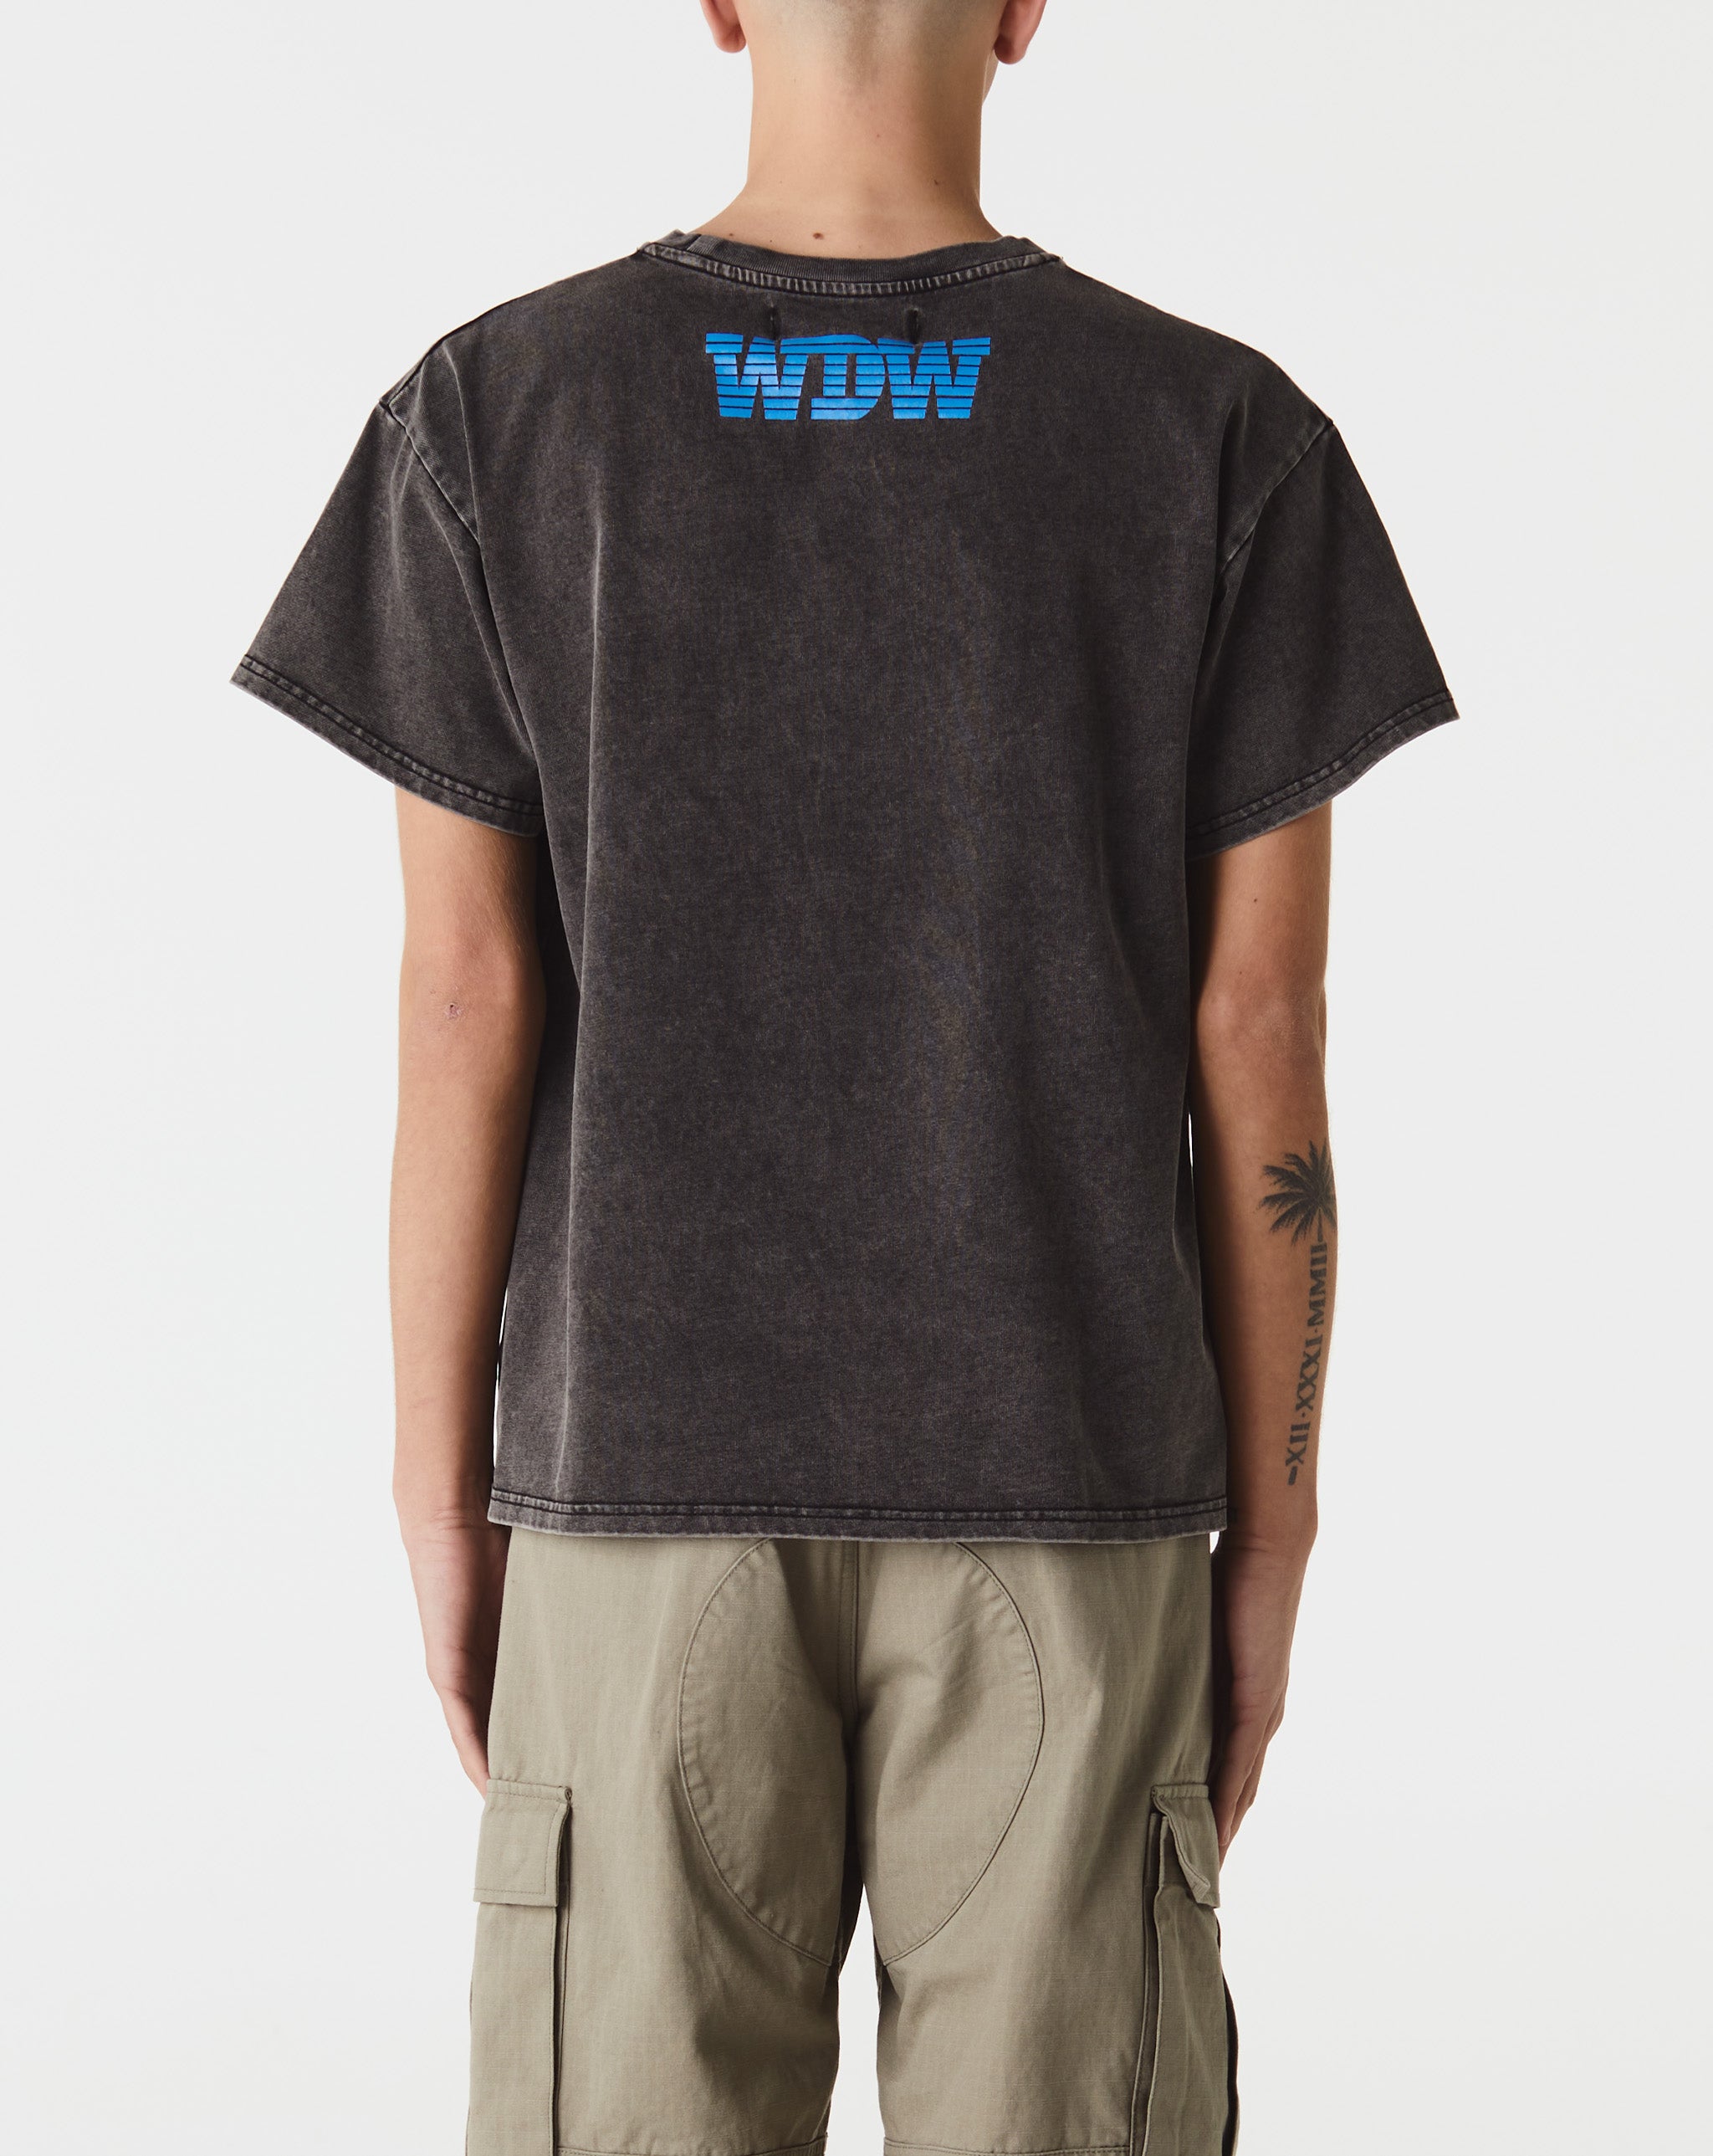 Intertwined Windows Hoodie Transition T-Shirt  - Cheap Erlebniswelt-fliegenfischen Jordan outlet